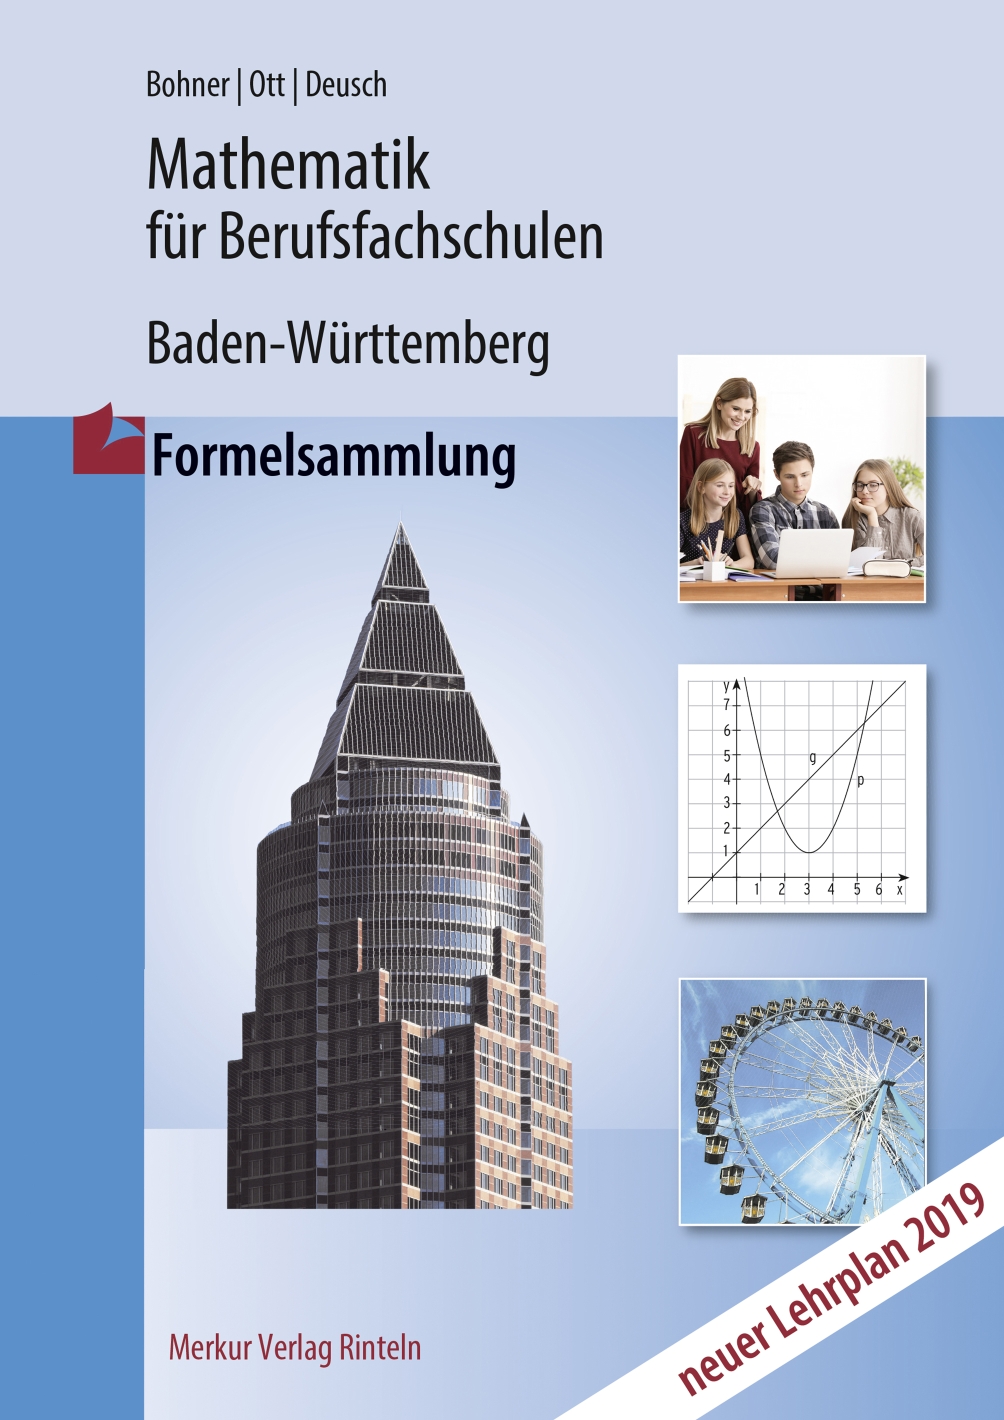 Mathematik für Berufsfachschulen in Baden-Württemberg - Formelsammlung